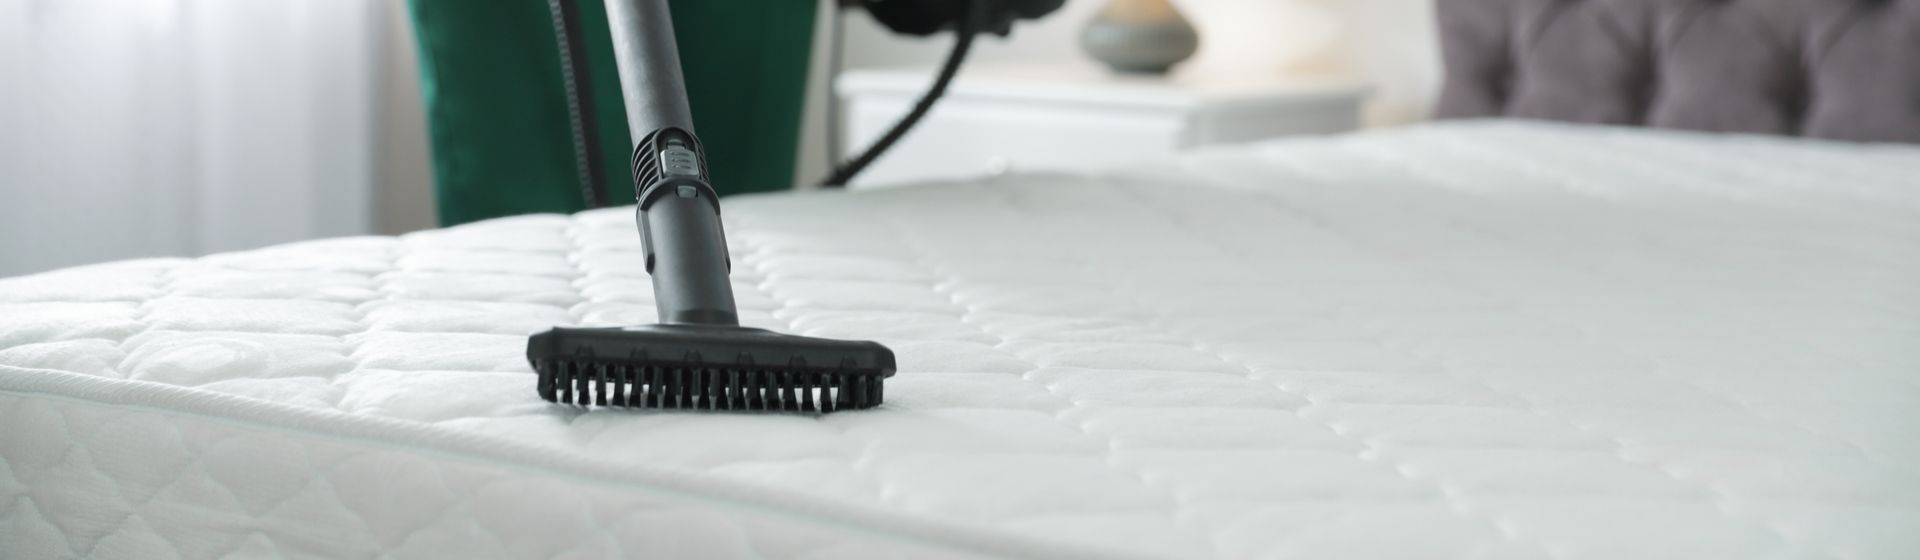 Como limpar colchão e tirar manchas da cama?